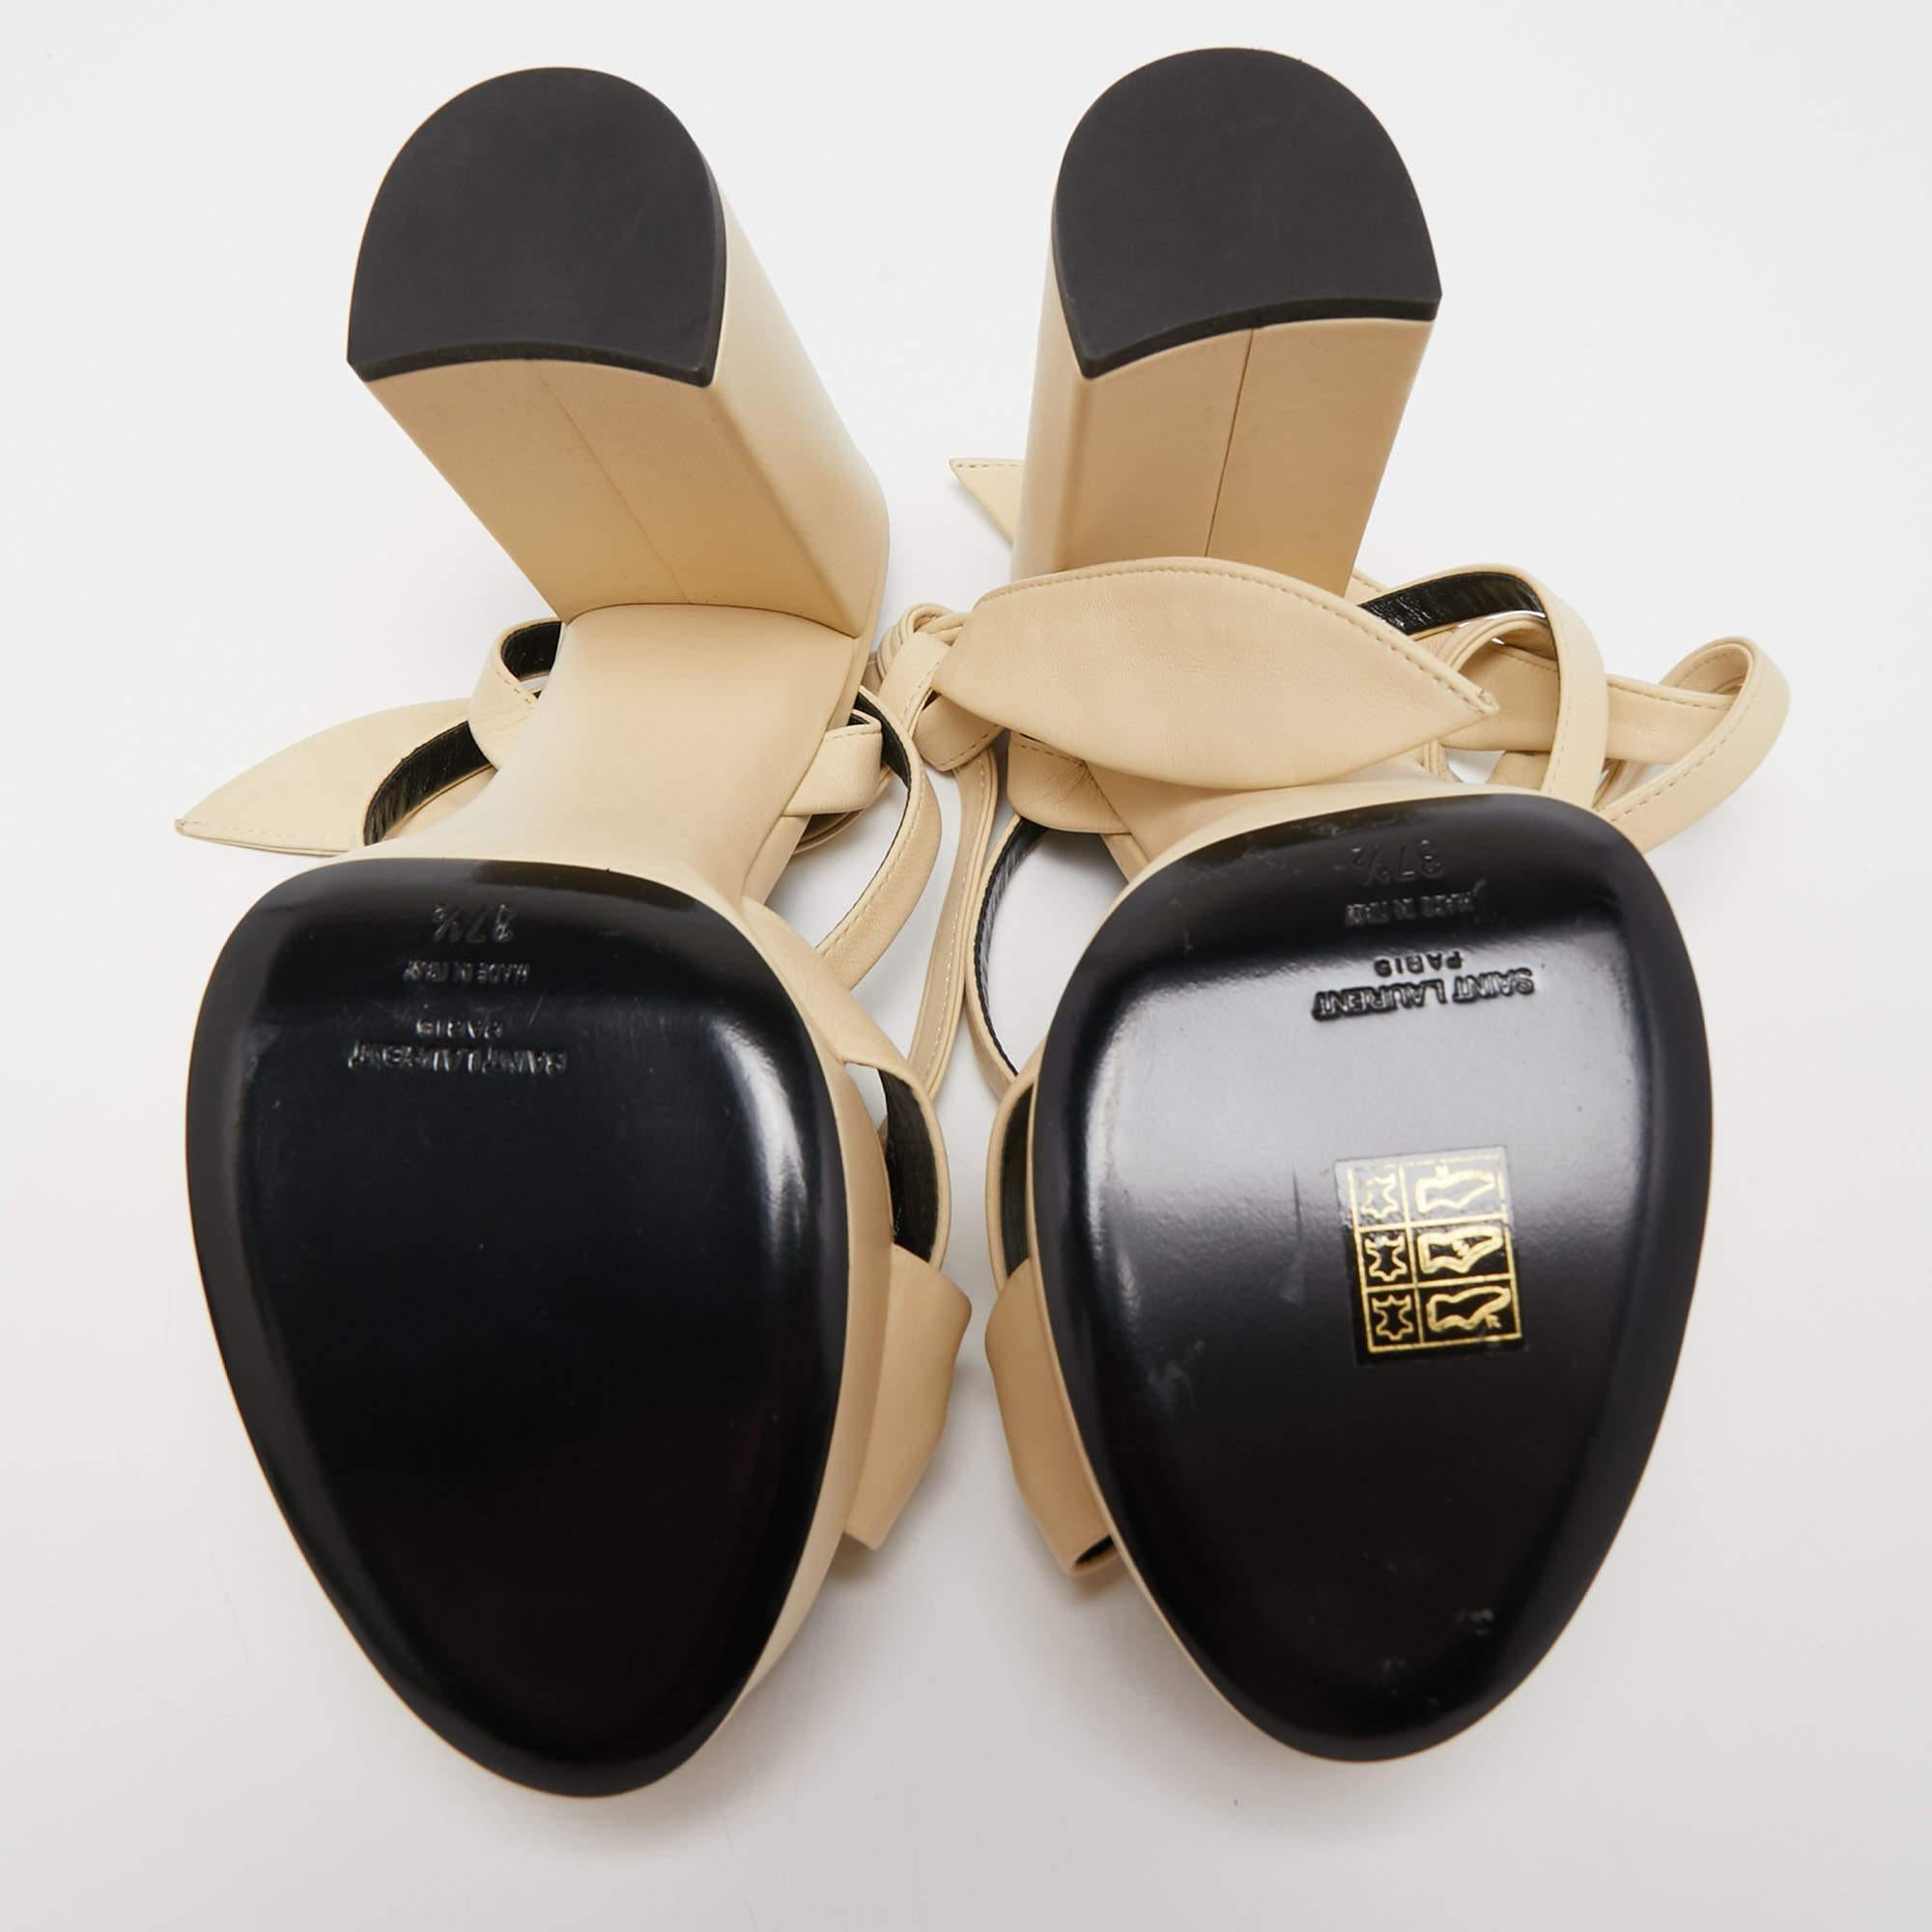 Saint Laurent Cream Leather Bianca Ankle Tie Sandals Size 37.5 4